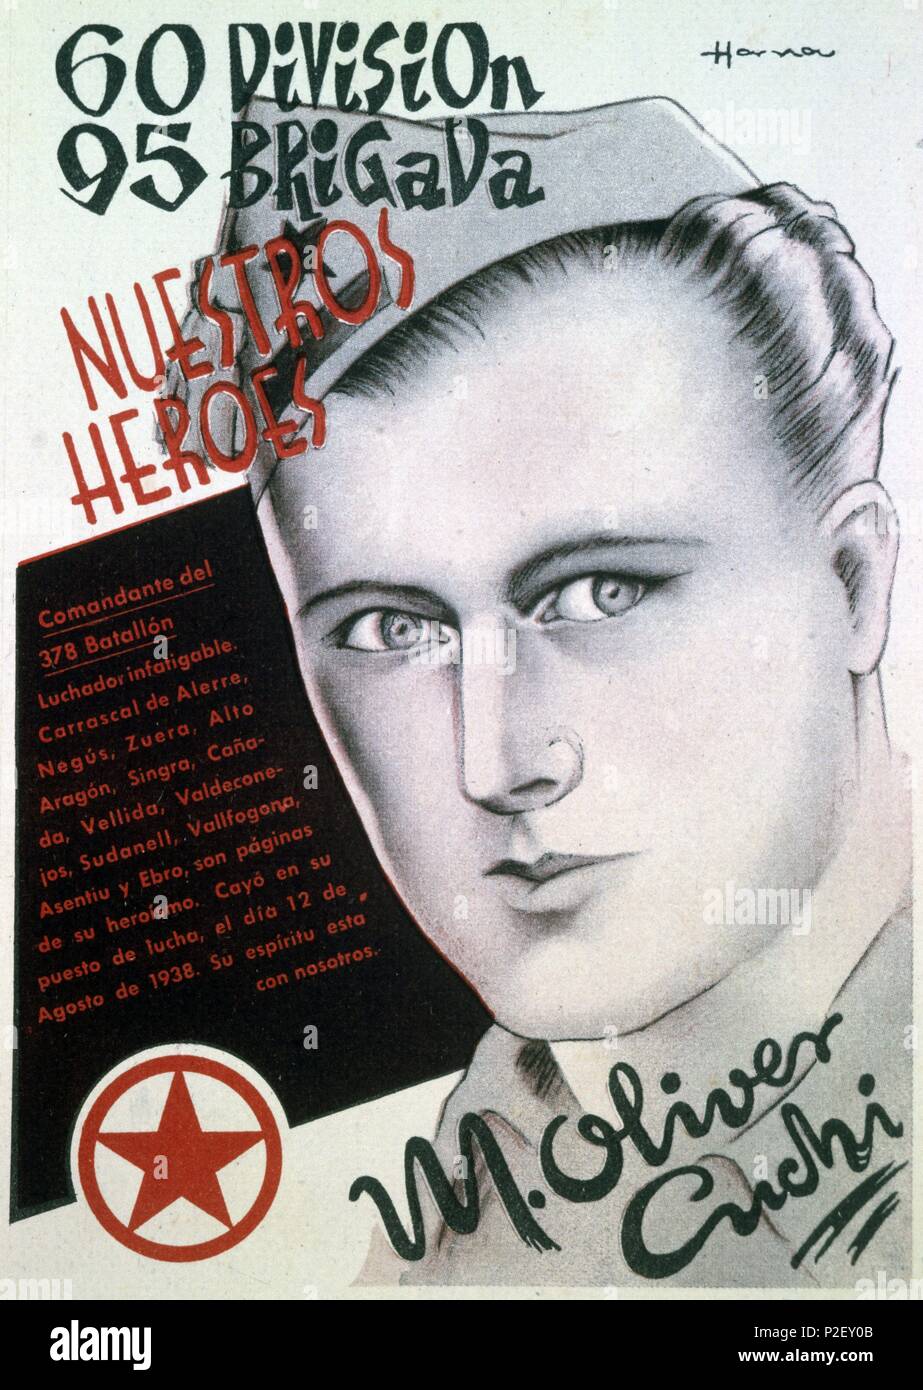 Cartel propagandístico de la 60 División-95 brigada. Zona Republicana. Guerra civil 1936-39. Stock Photo